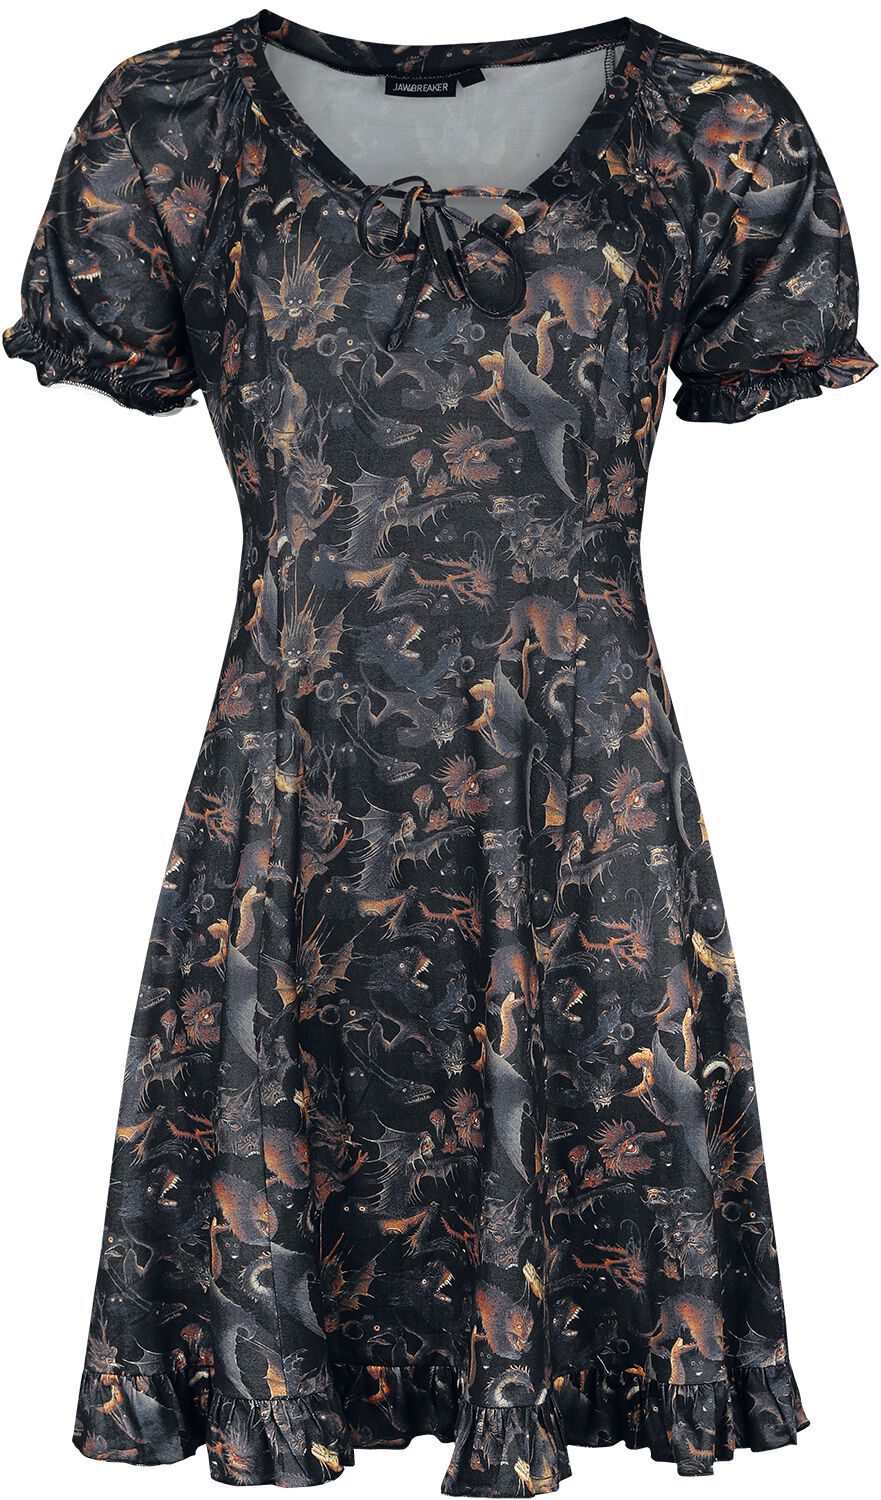 Jawbreaker - Gothic Kurzes Kleid - Paradise Lost Dress - XS bis 4XL - für Damen - Größe XXL - multicolor